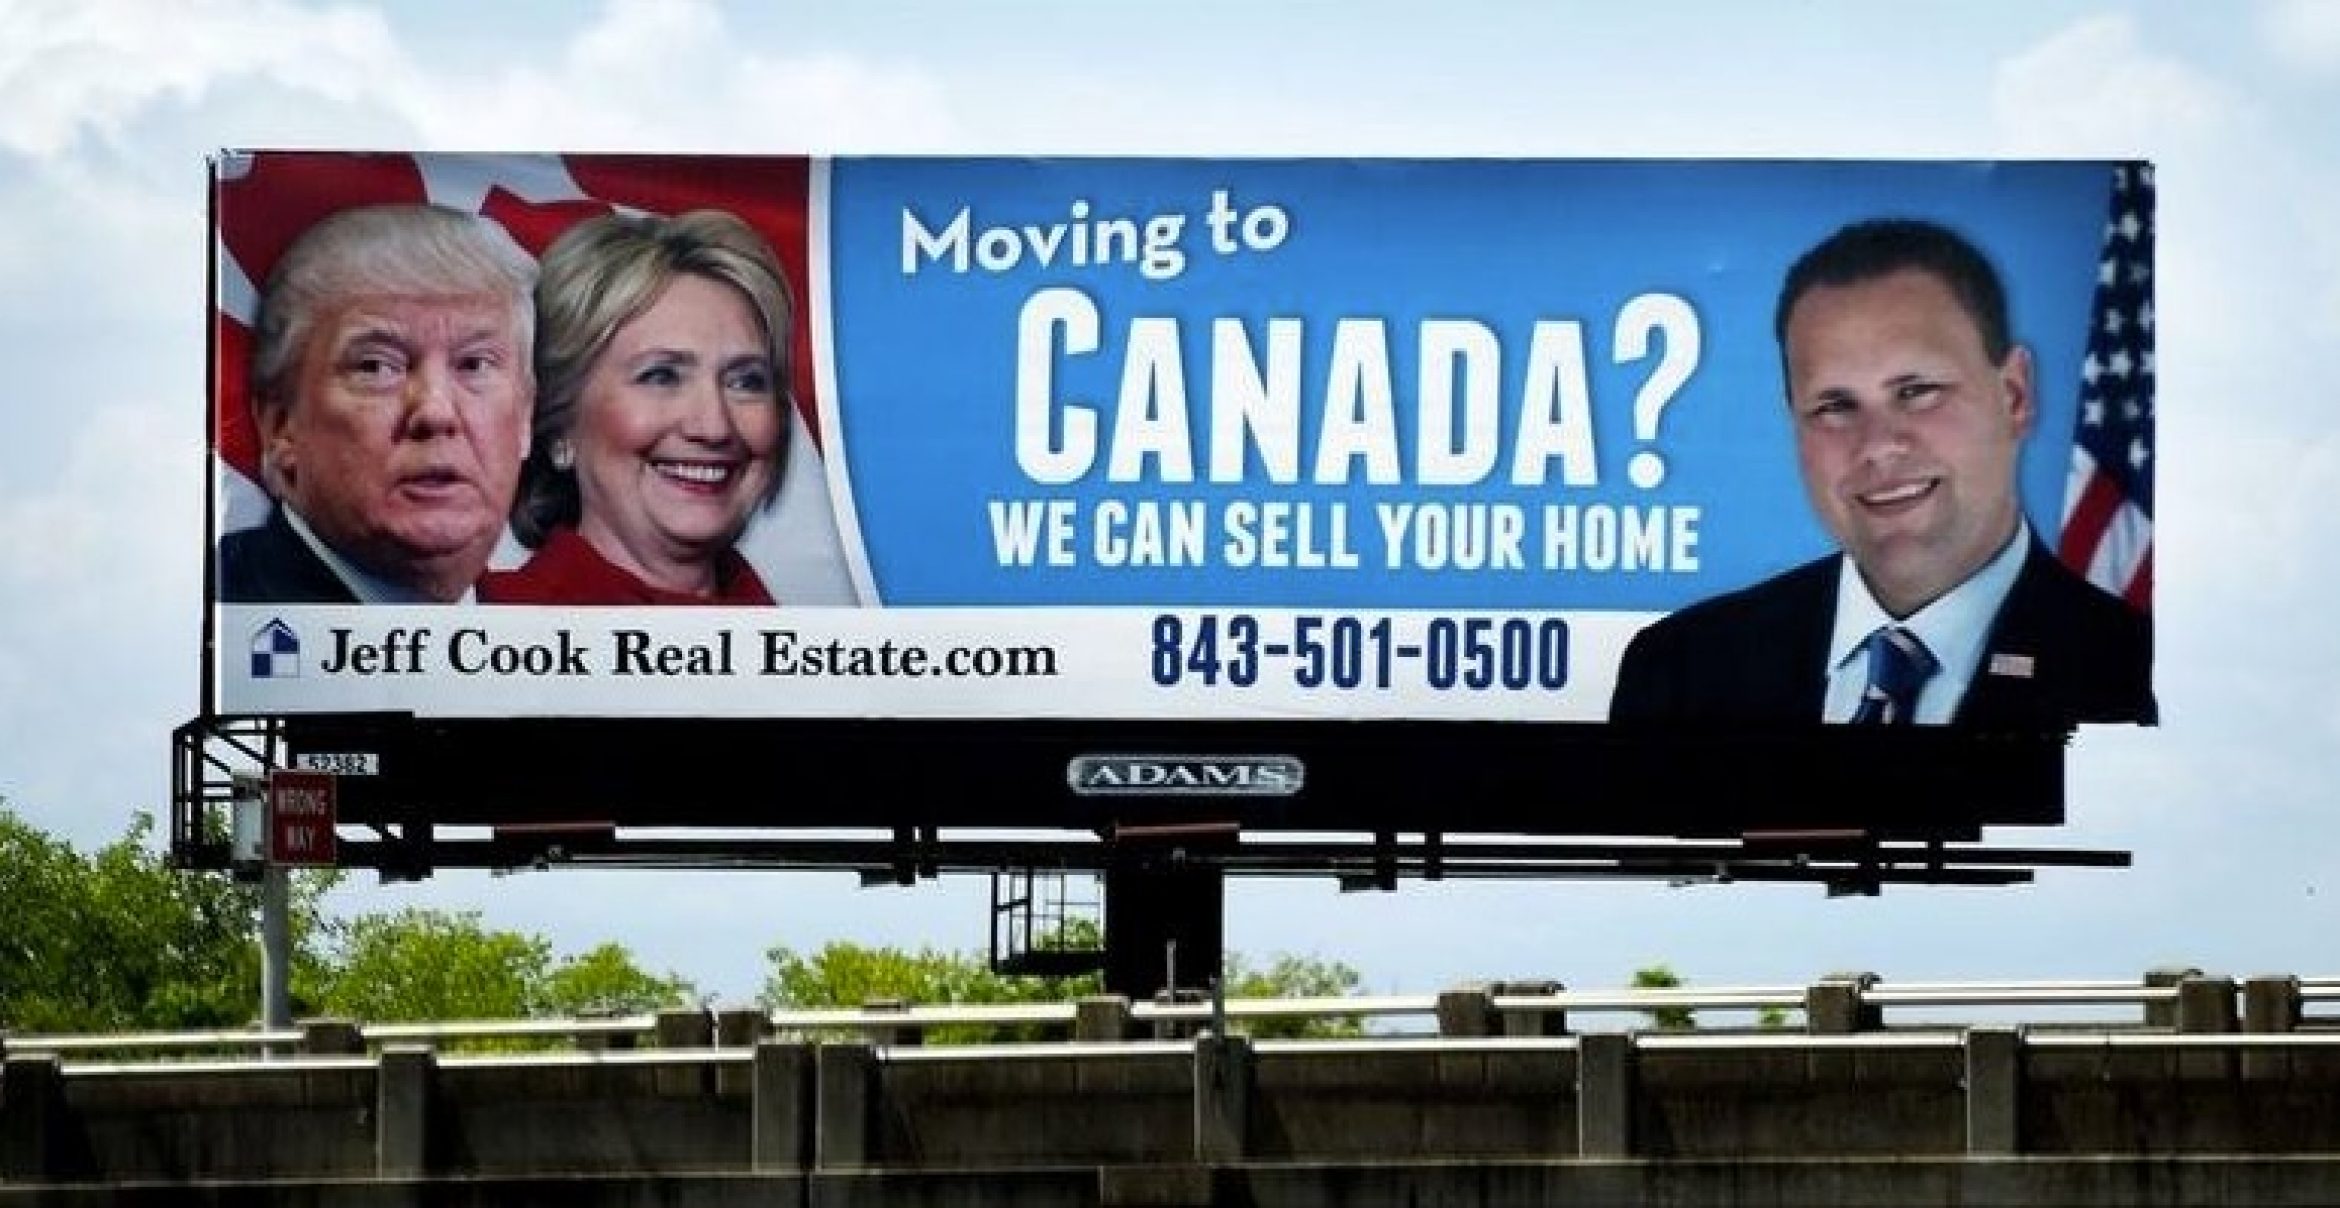 Guter Geschäftsinstinkt: US-Immobilienmakler wirbt mit Auswanderung nach Kanada